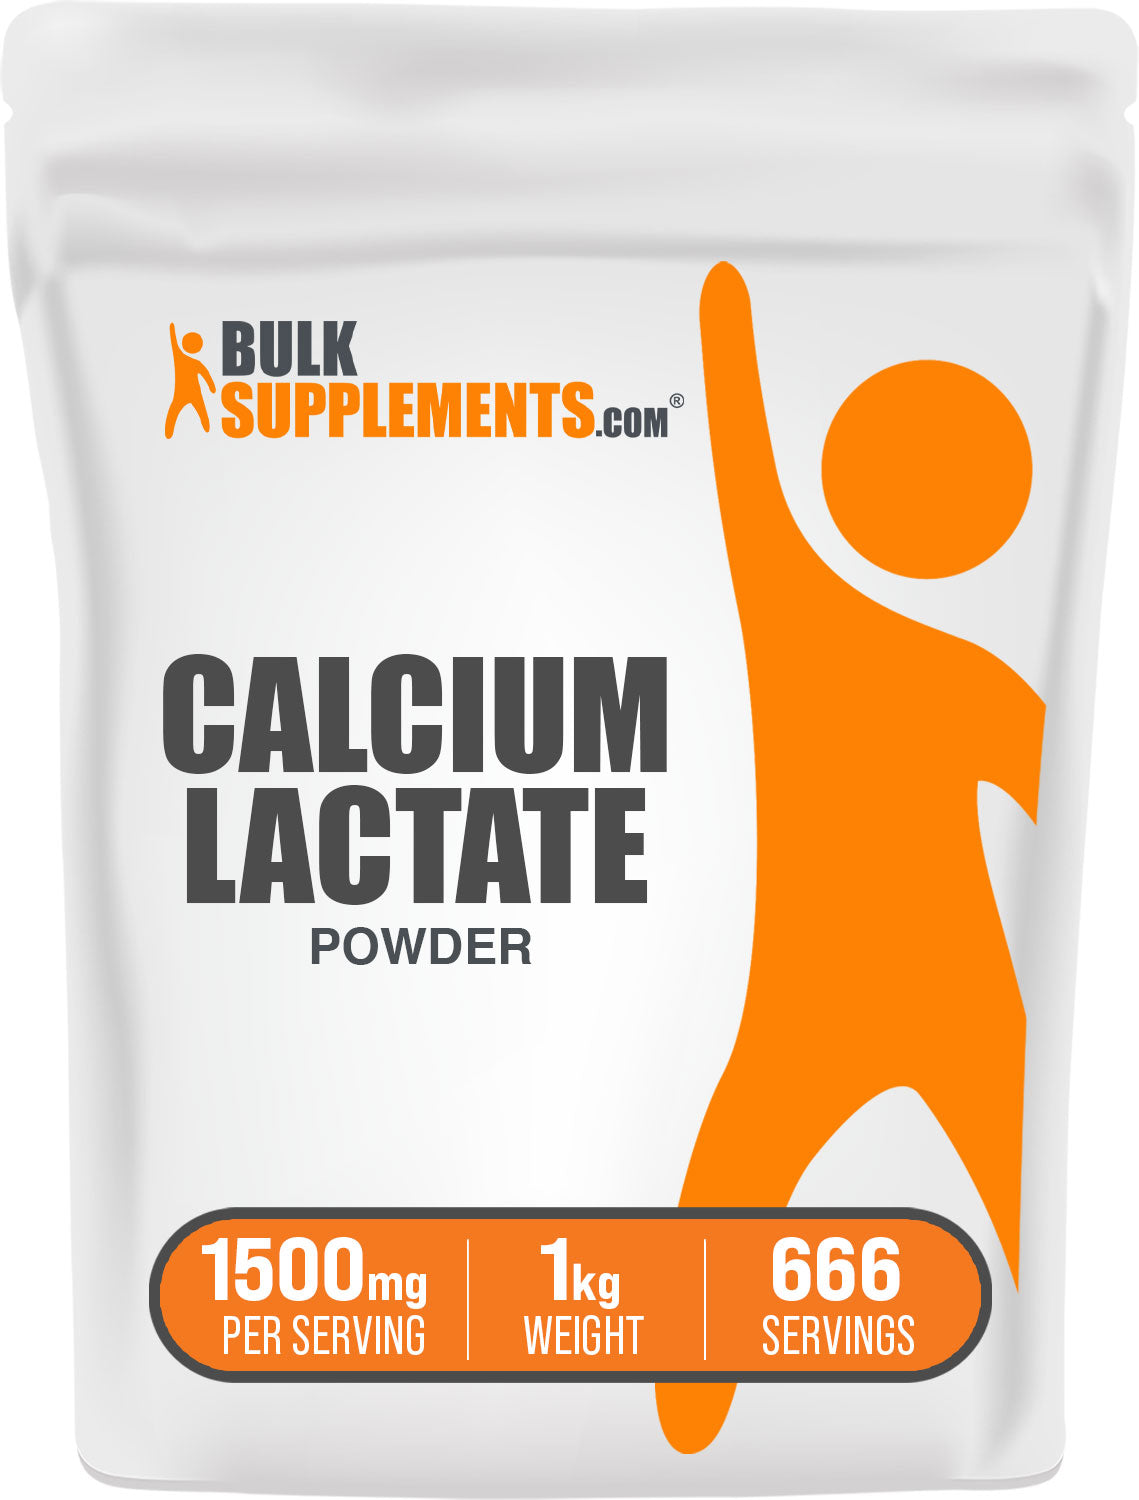 1kg calcium lactate